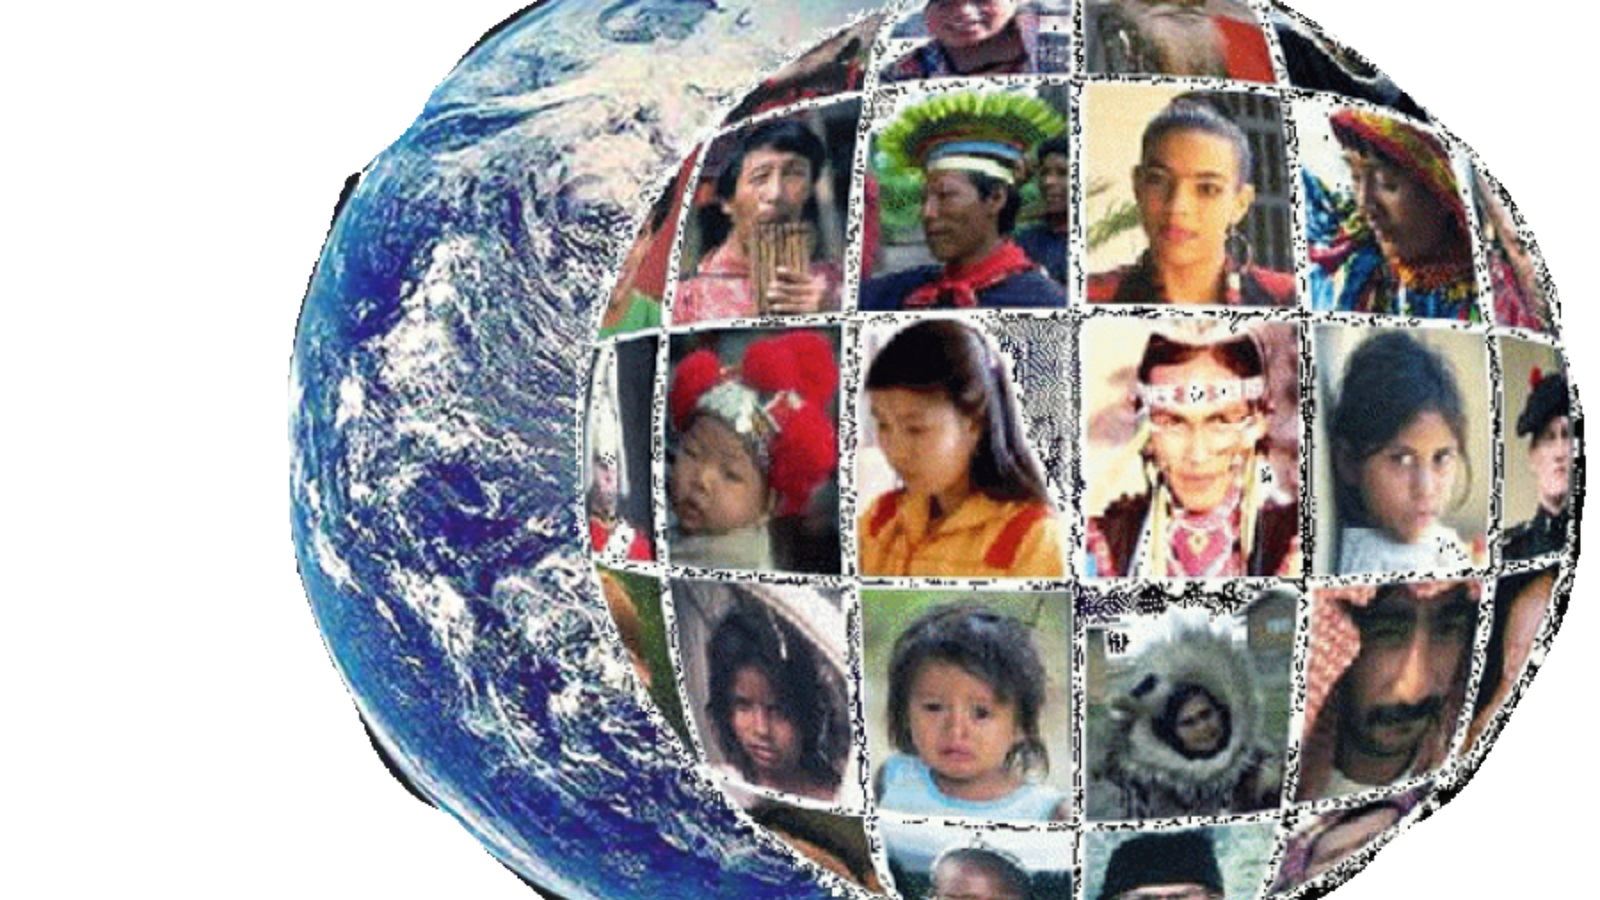 Народы населяющие планету. Народы земли. Земной шар с изображением людей разных национальностей. Человечество на земном шаре. Жители планеты земля.